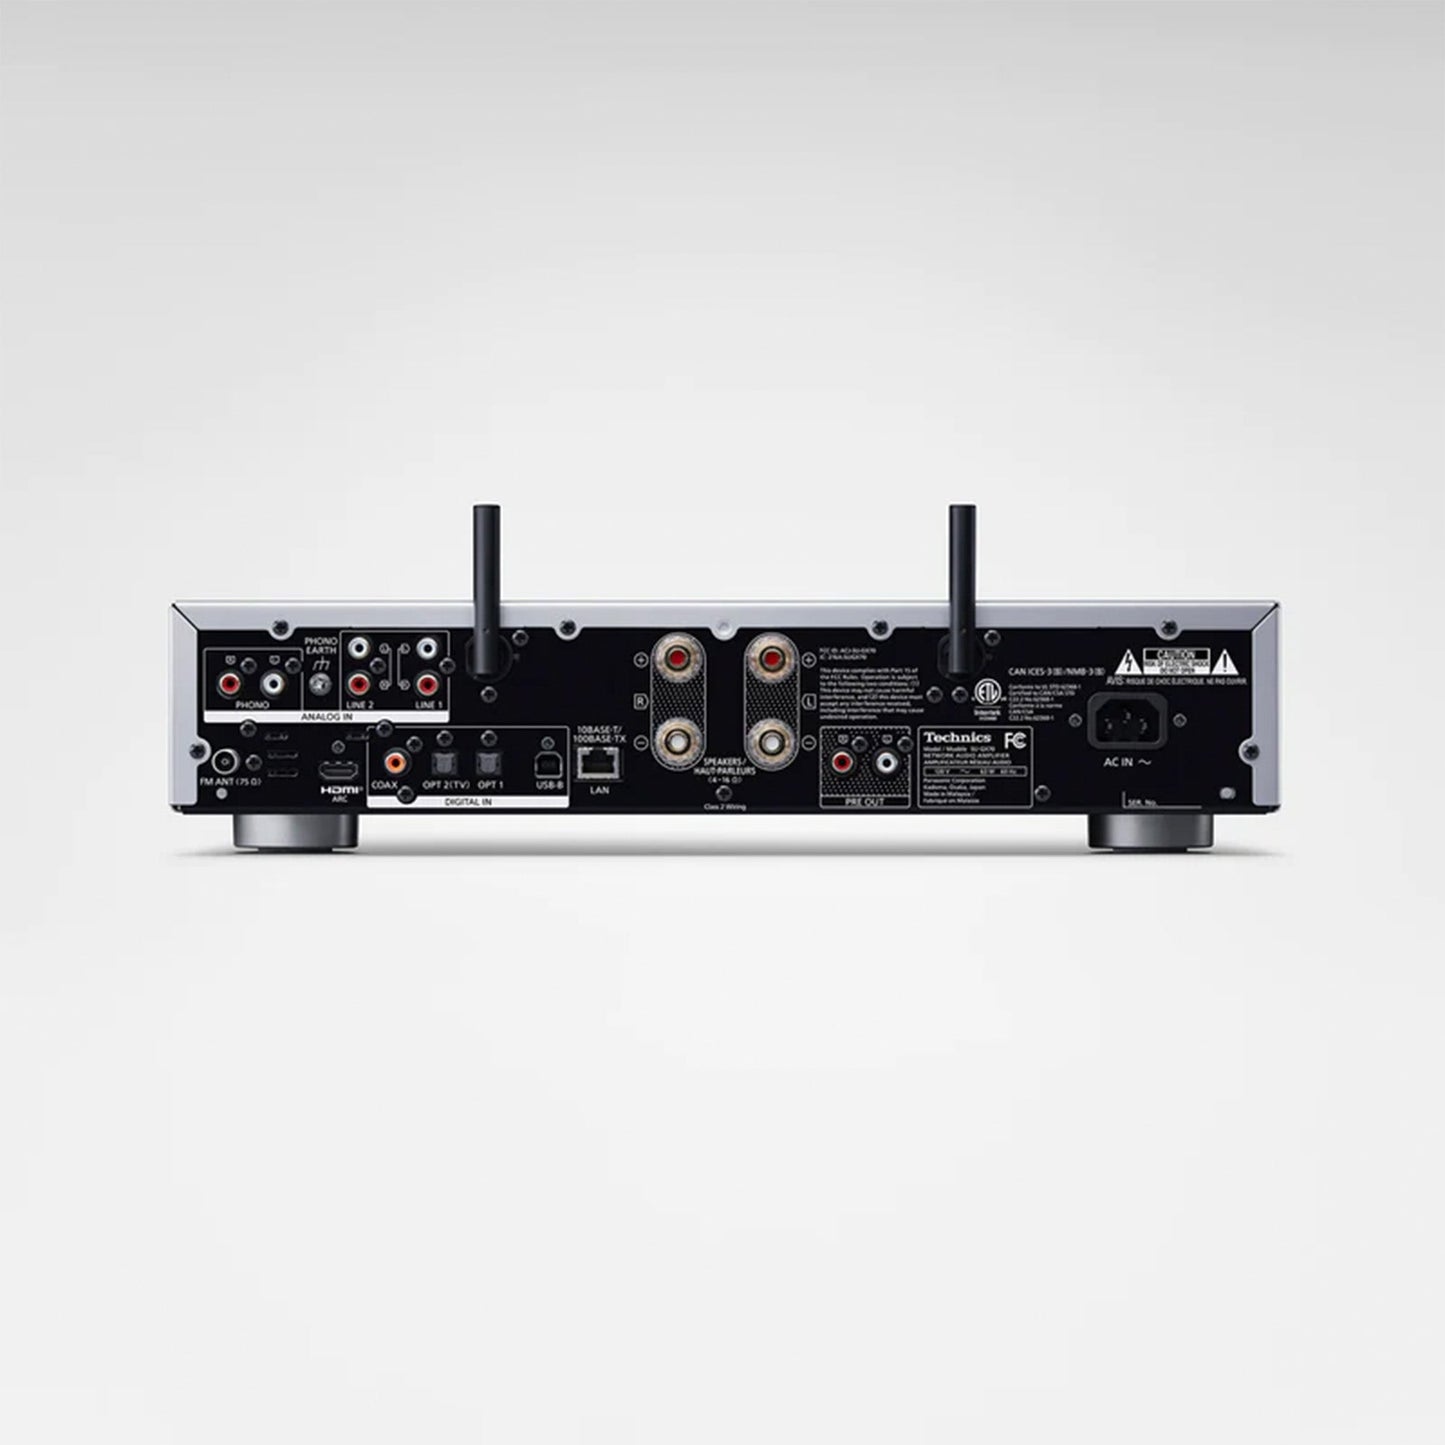 Technics SU-GX70EB Grand Class 2 Channel (Stereo) Network Amplifier. Silver rear panel image